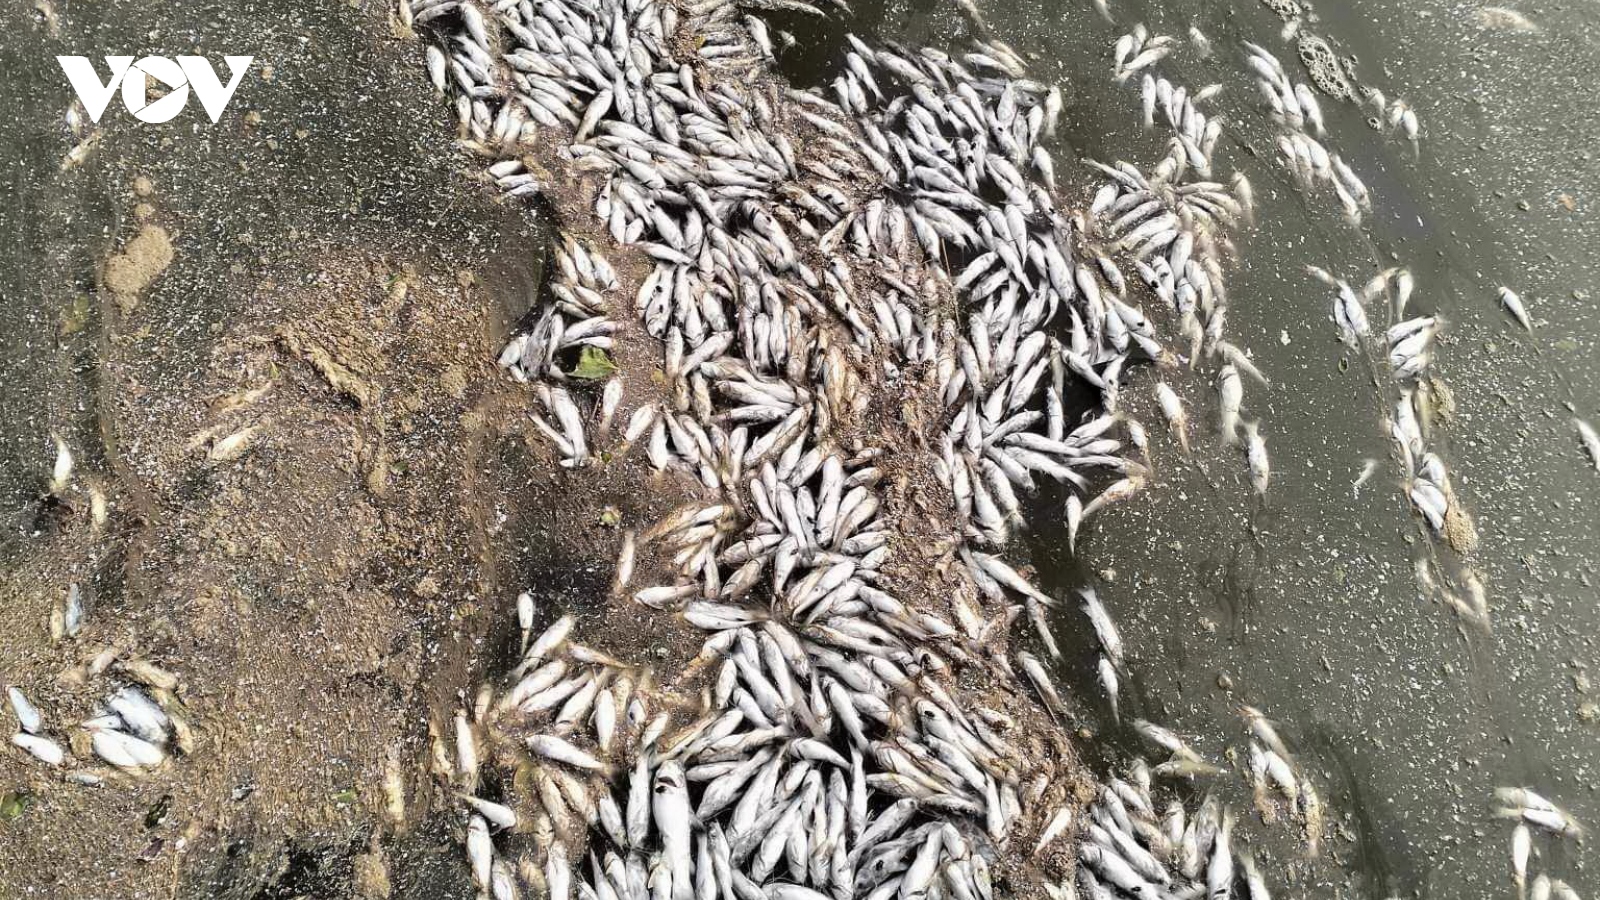 Cá chết hàng loạt trên sông ở Quảng Trị